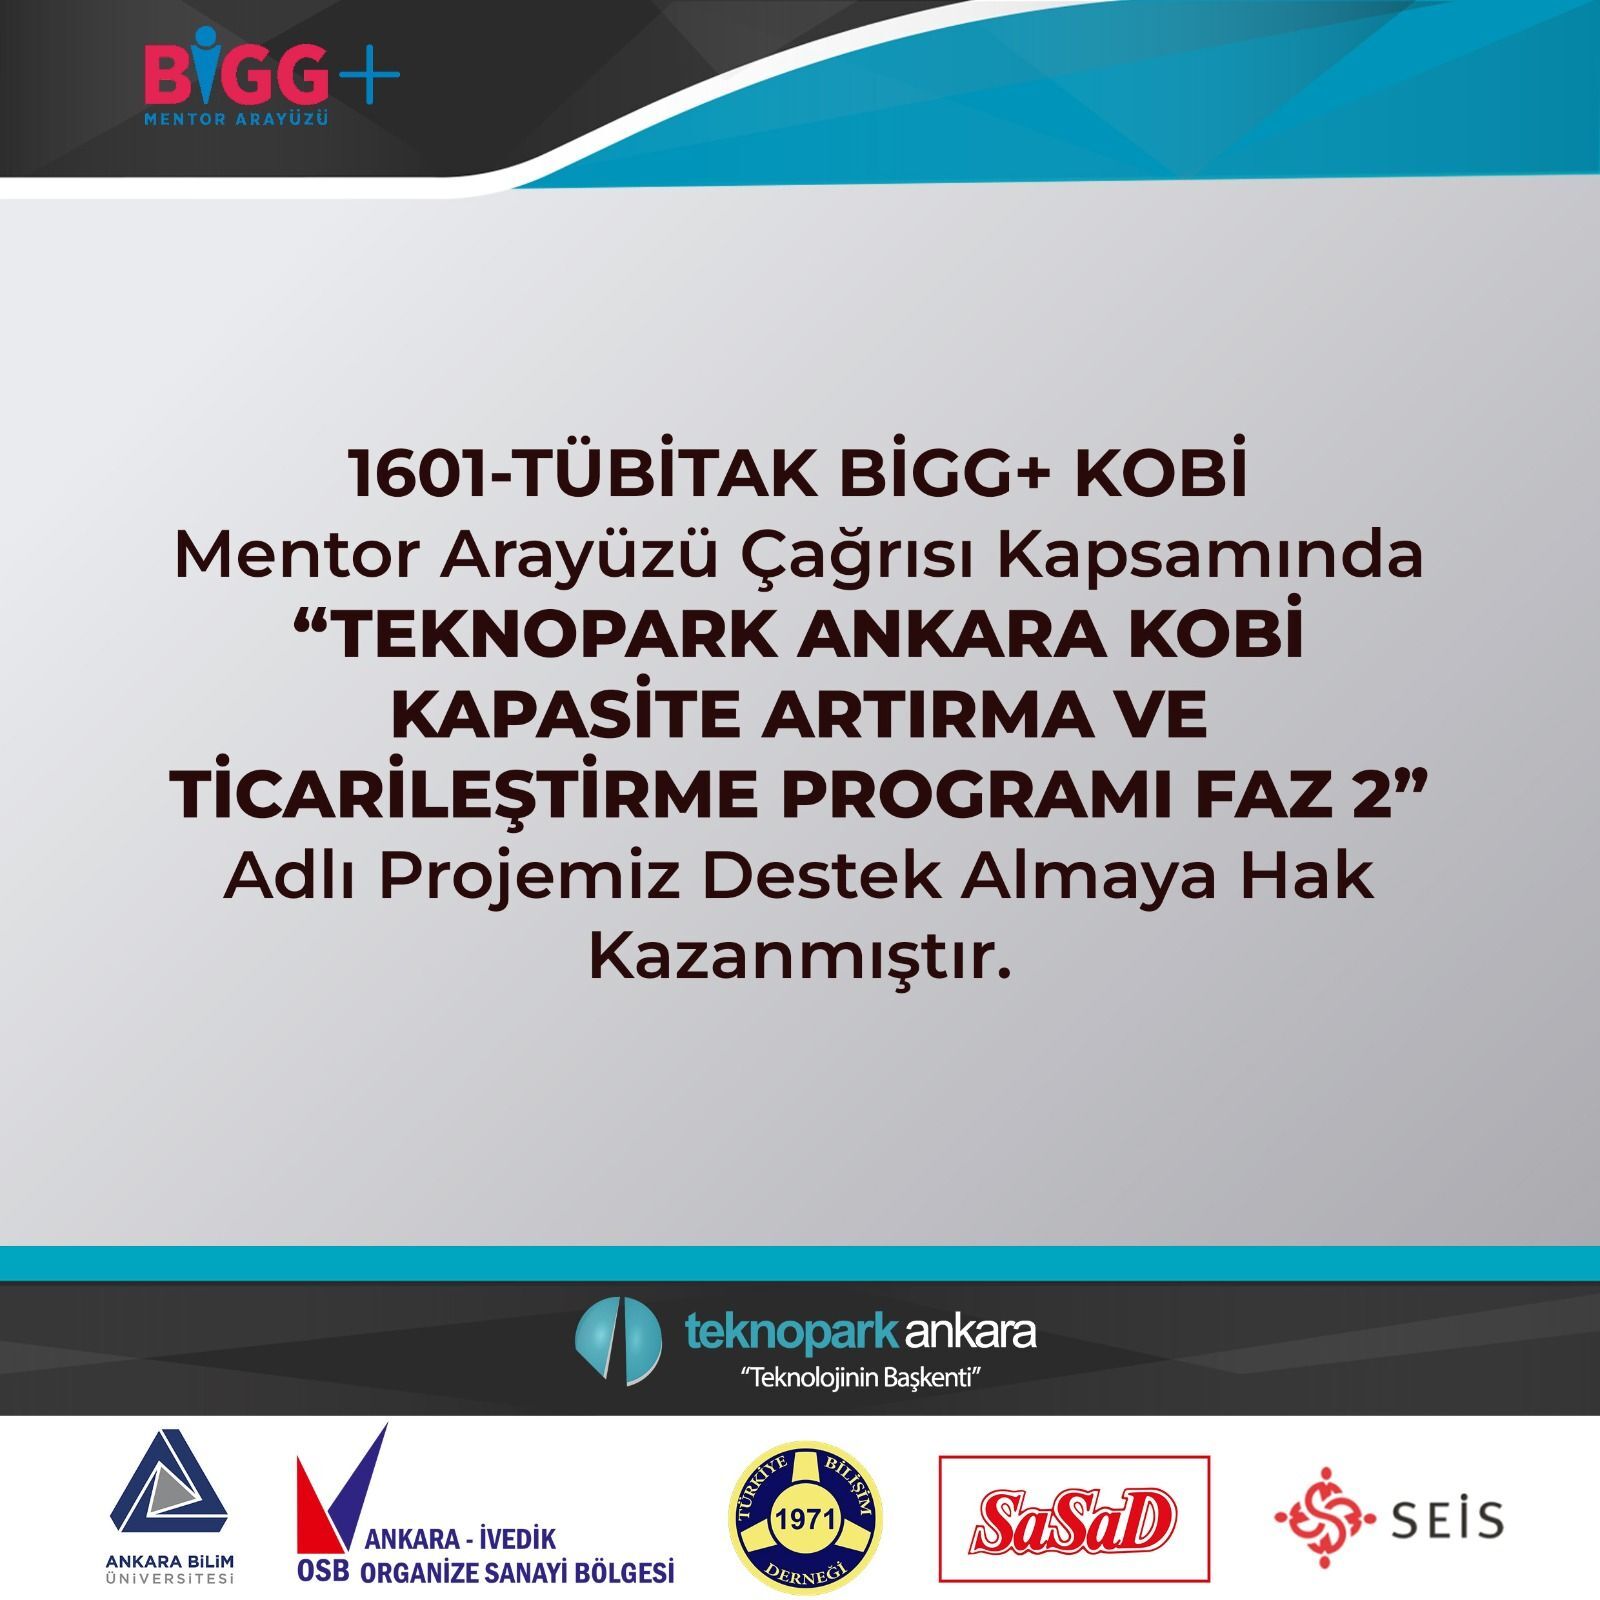 Teknopark Ankara KOBİ Kapasite Artırma ve Ticarileştirme Programı Faz 2 Projesi, TÜBİTAK BİGG+ KOBİ Mentor Arayüzü 2022 Yılı Çağrısı kapsamında desteklenmeye hak kazanan 20 Projeden biri oldu.